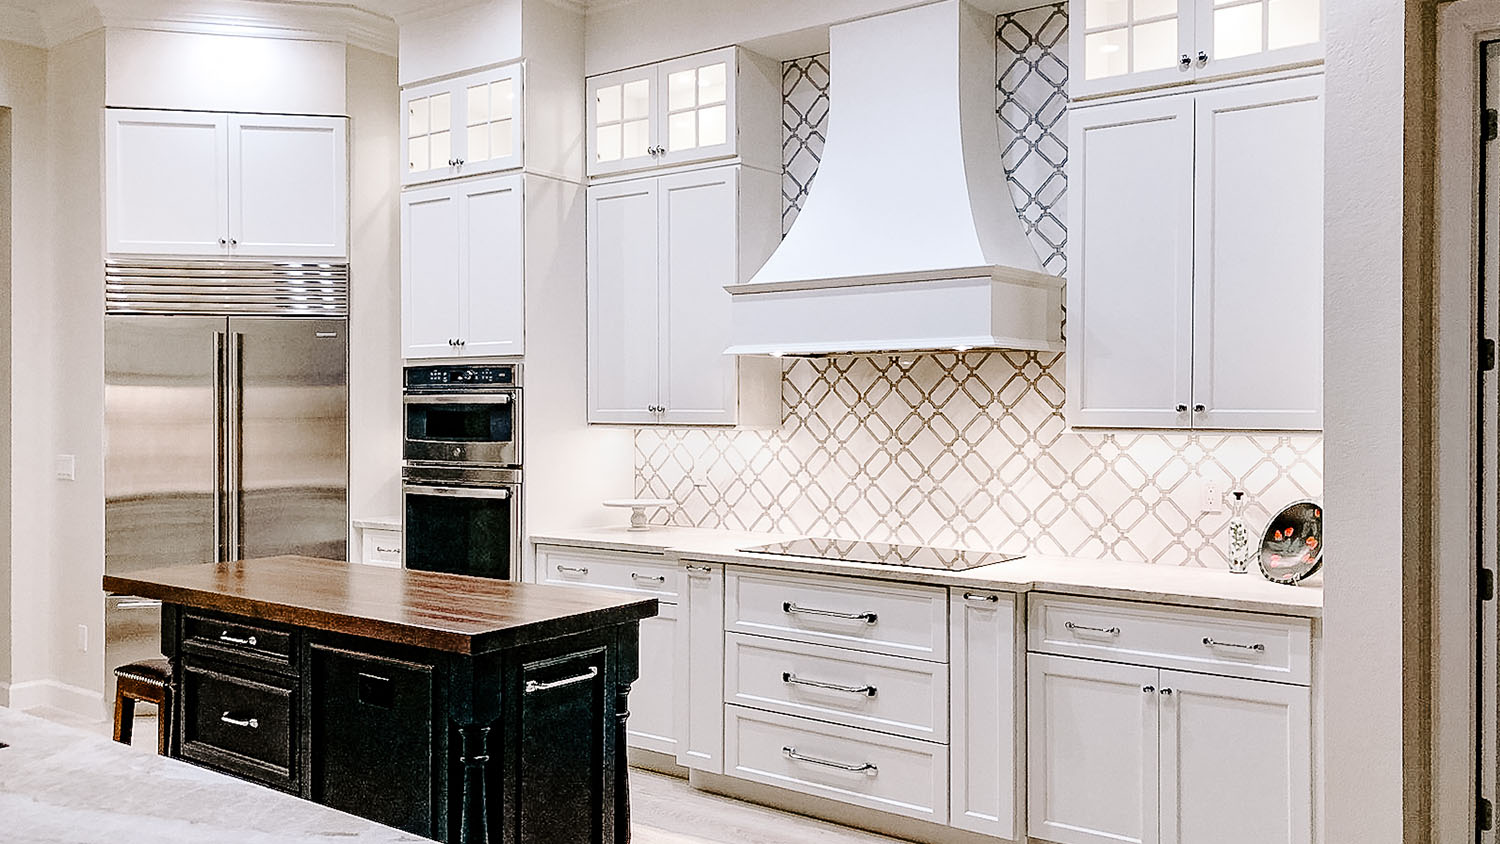 custom kitchen backsplash tile remodel fort myers cape coral southwest florida